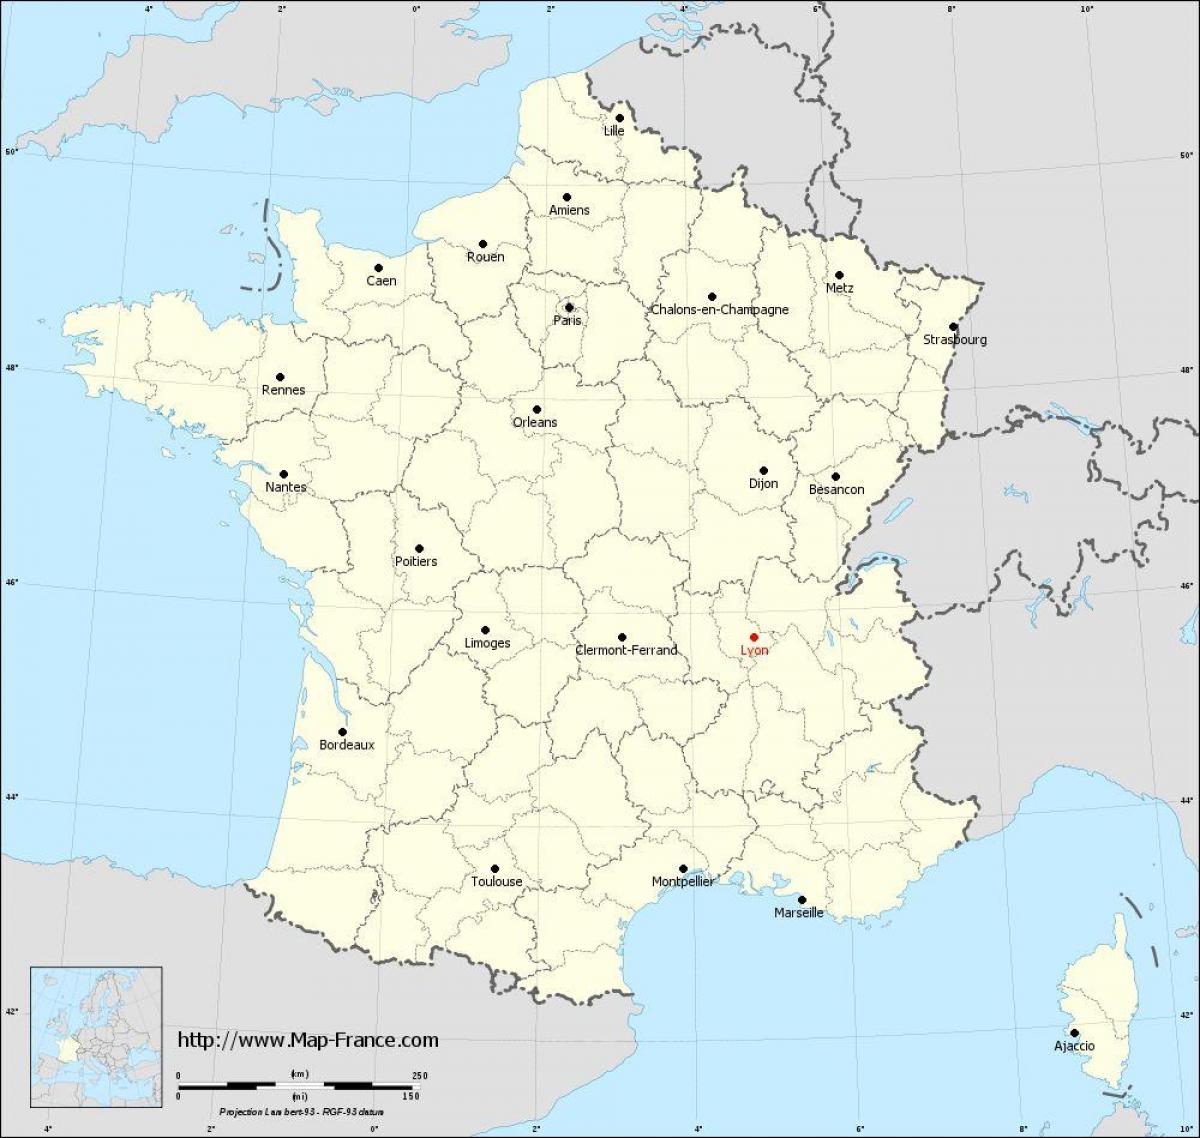 hol van Lyons franciaország térkép